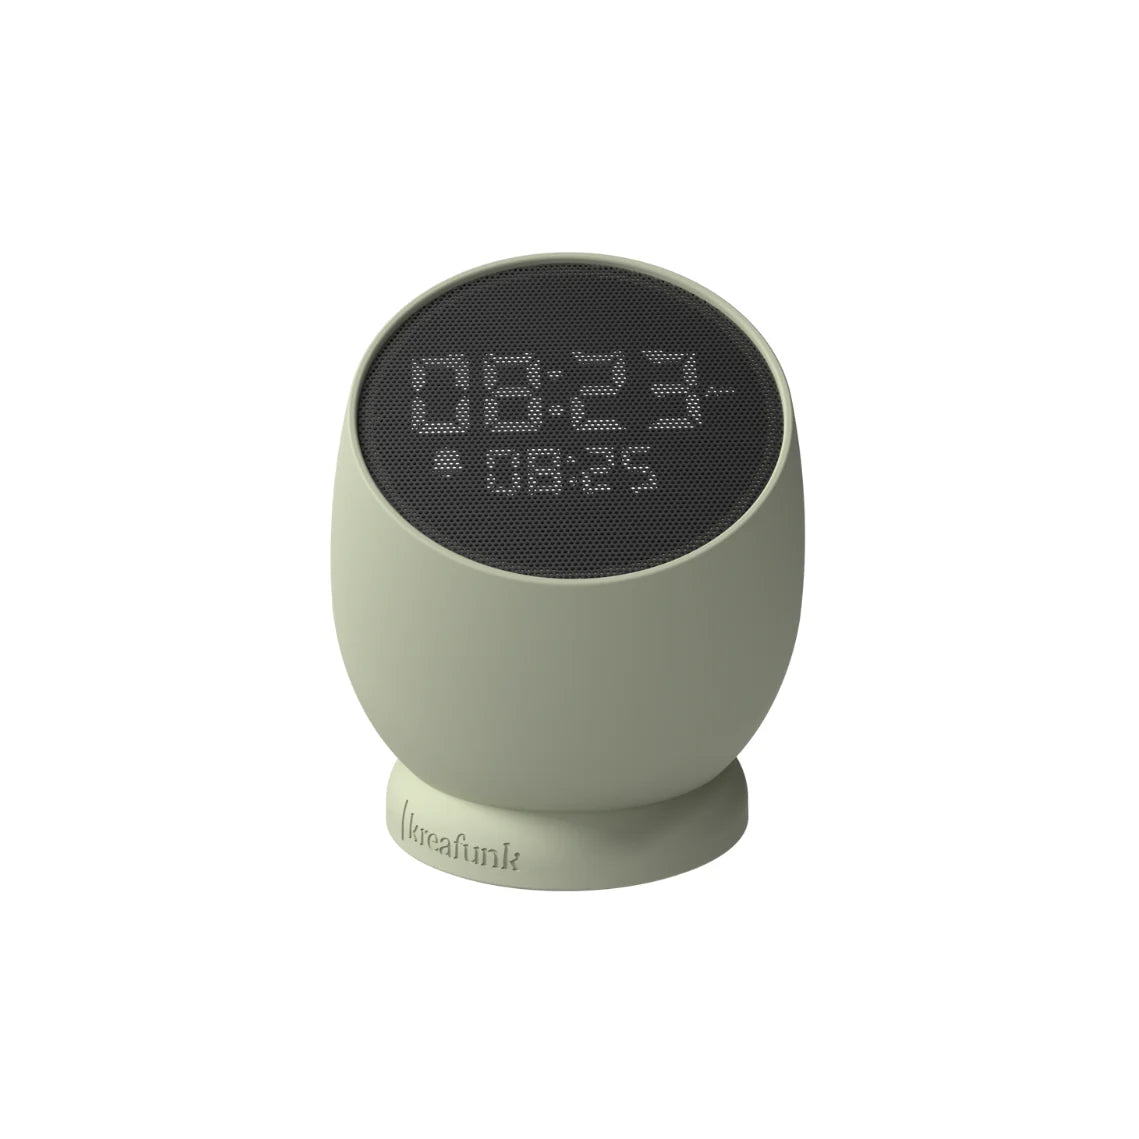 Bell Alarm Clock